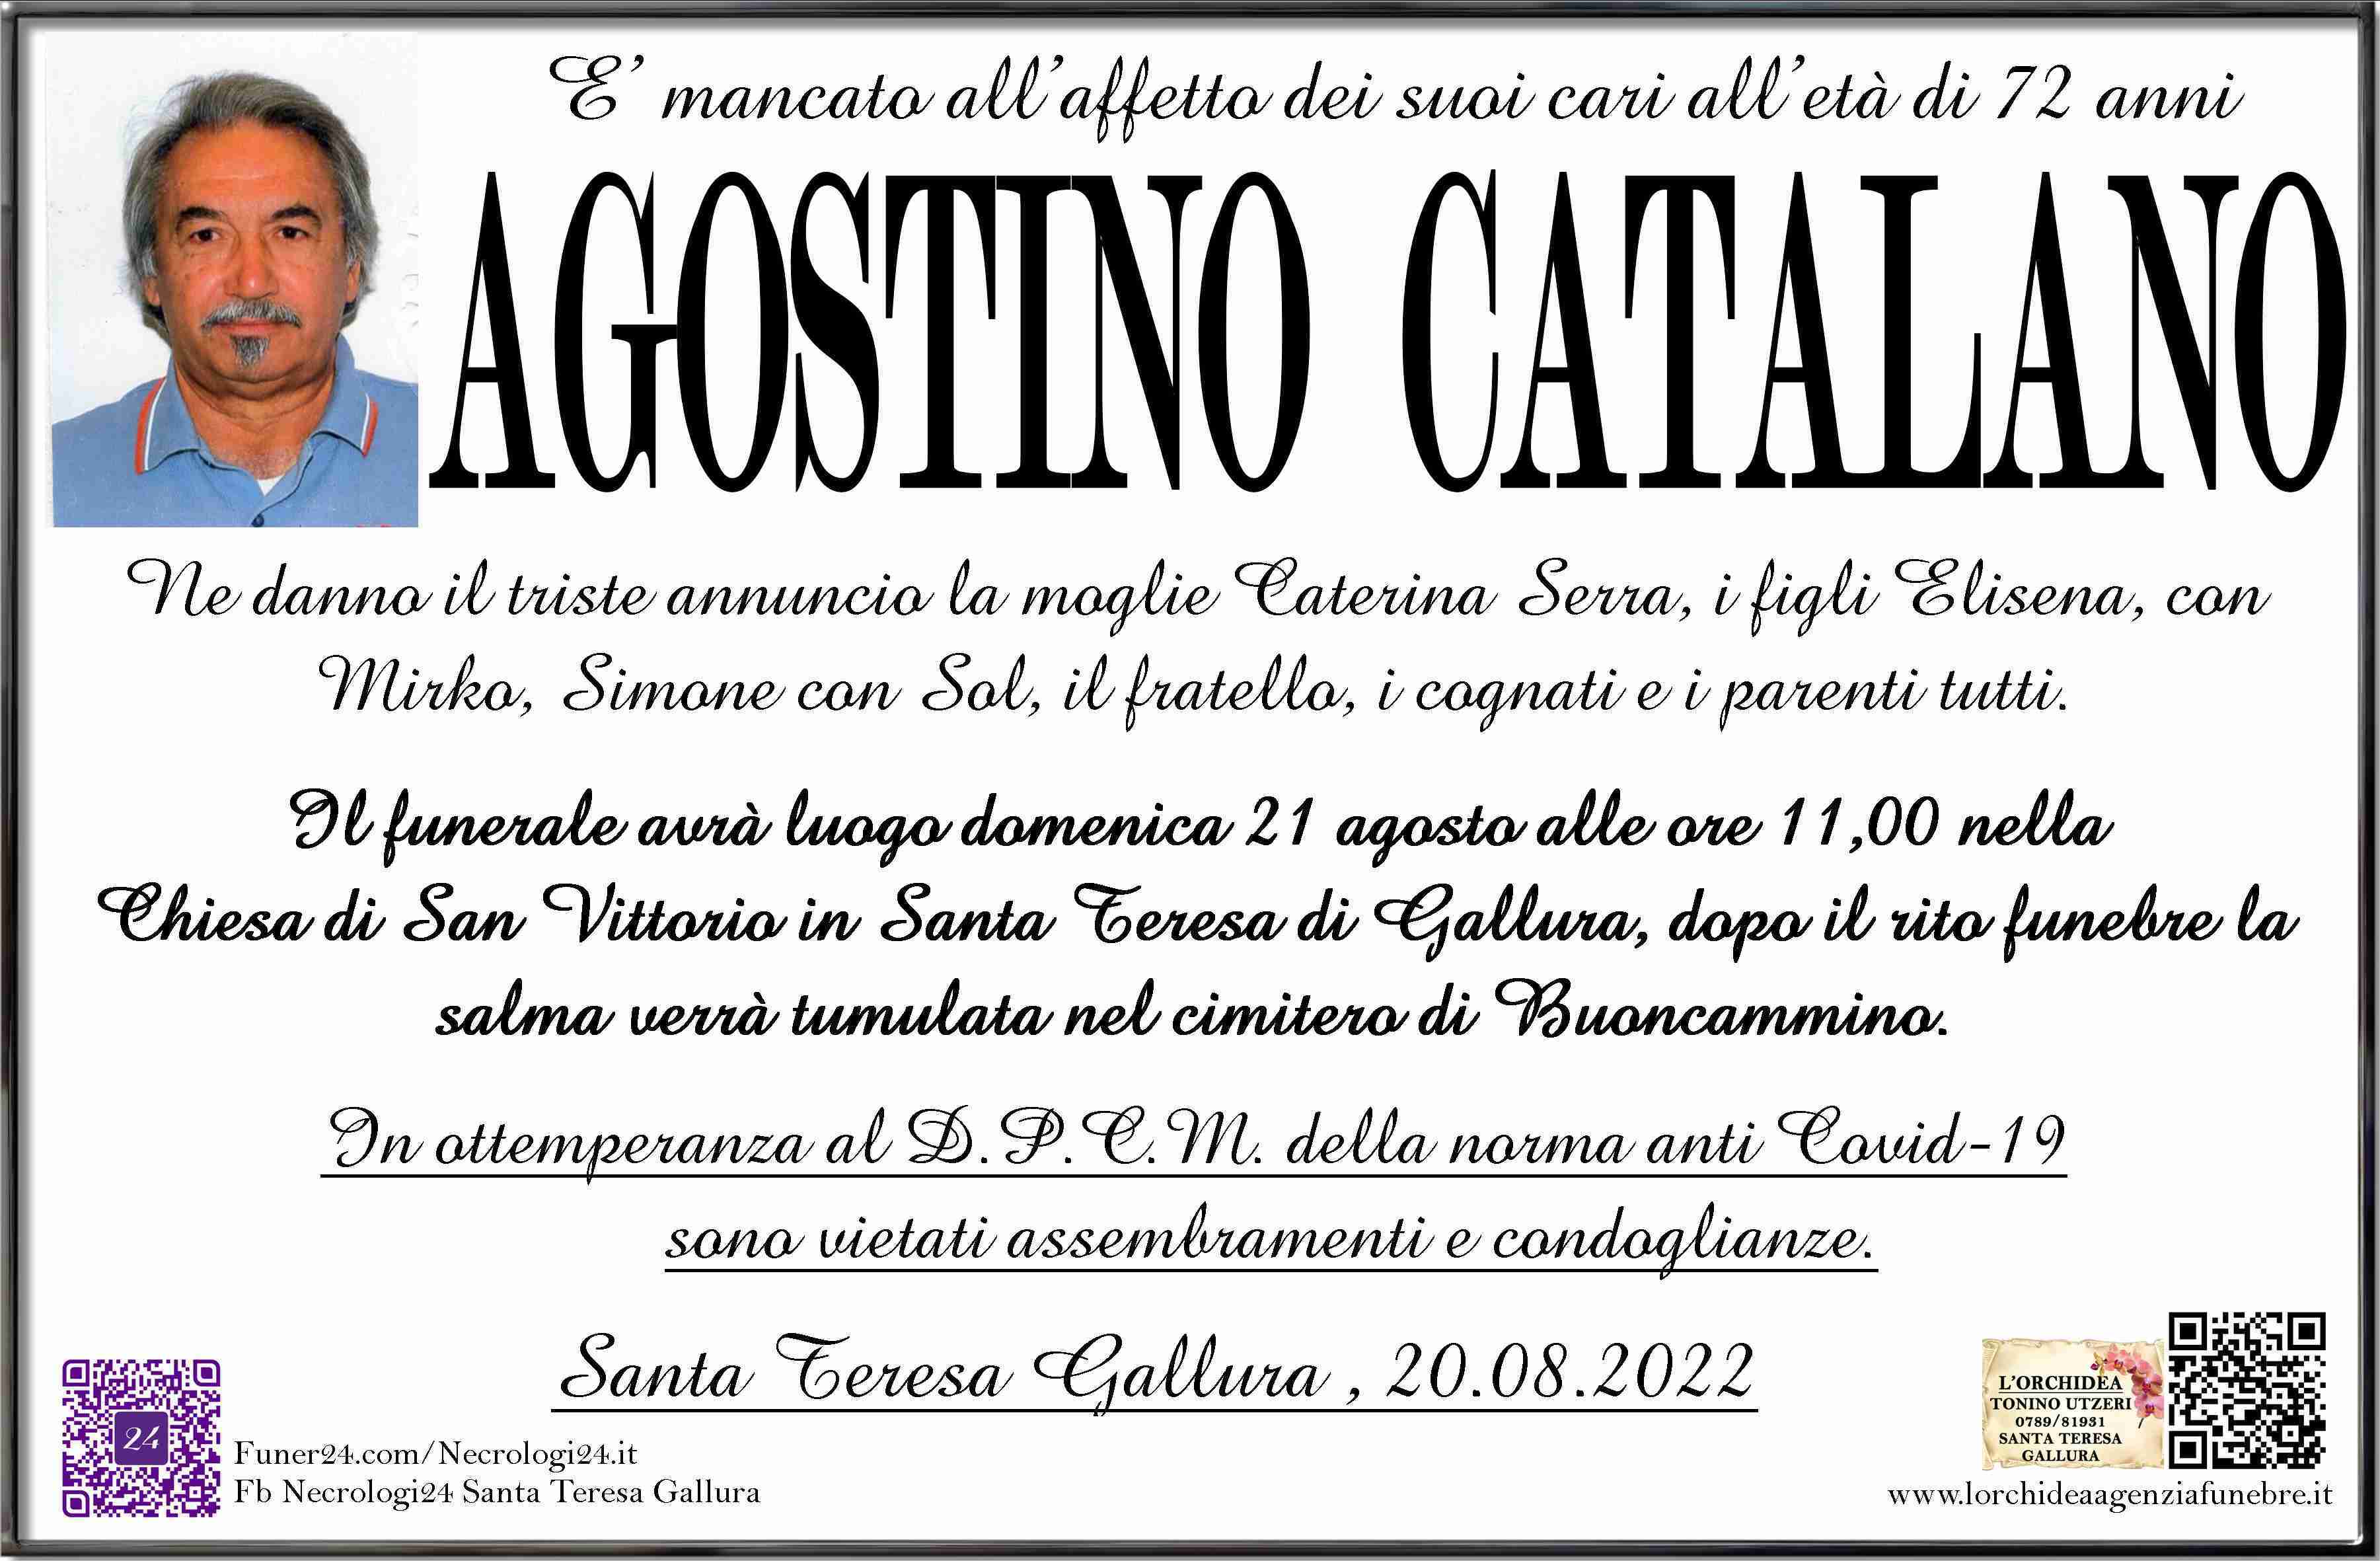 Agostino Catalano